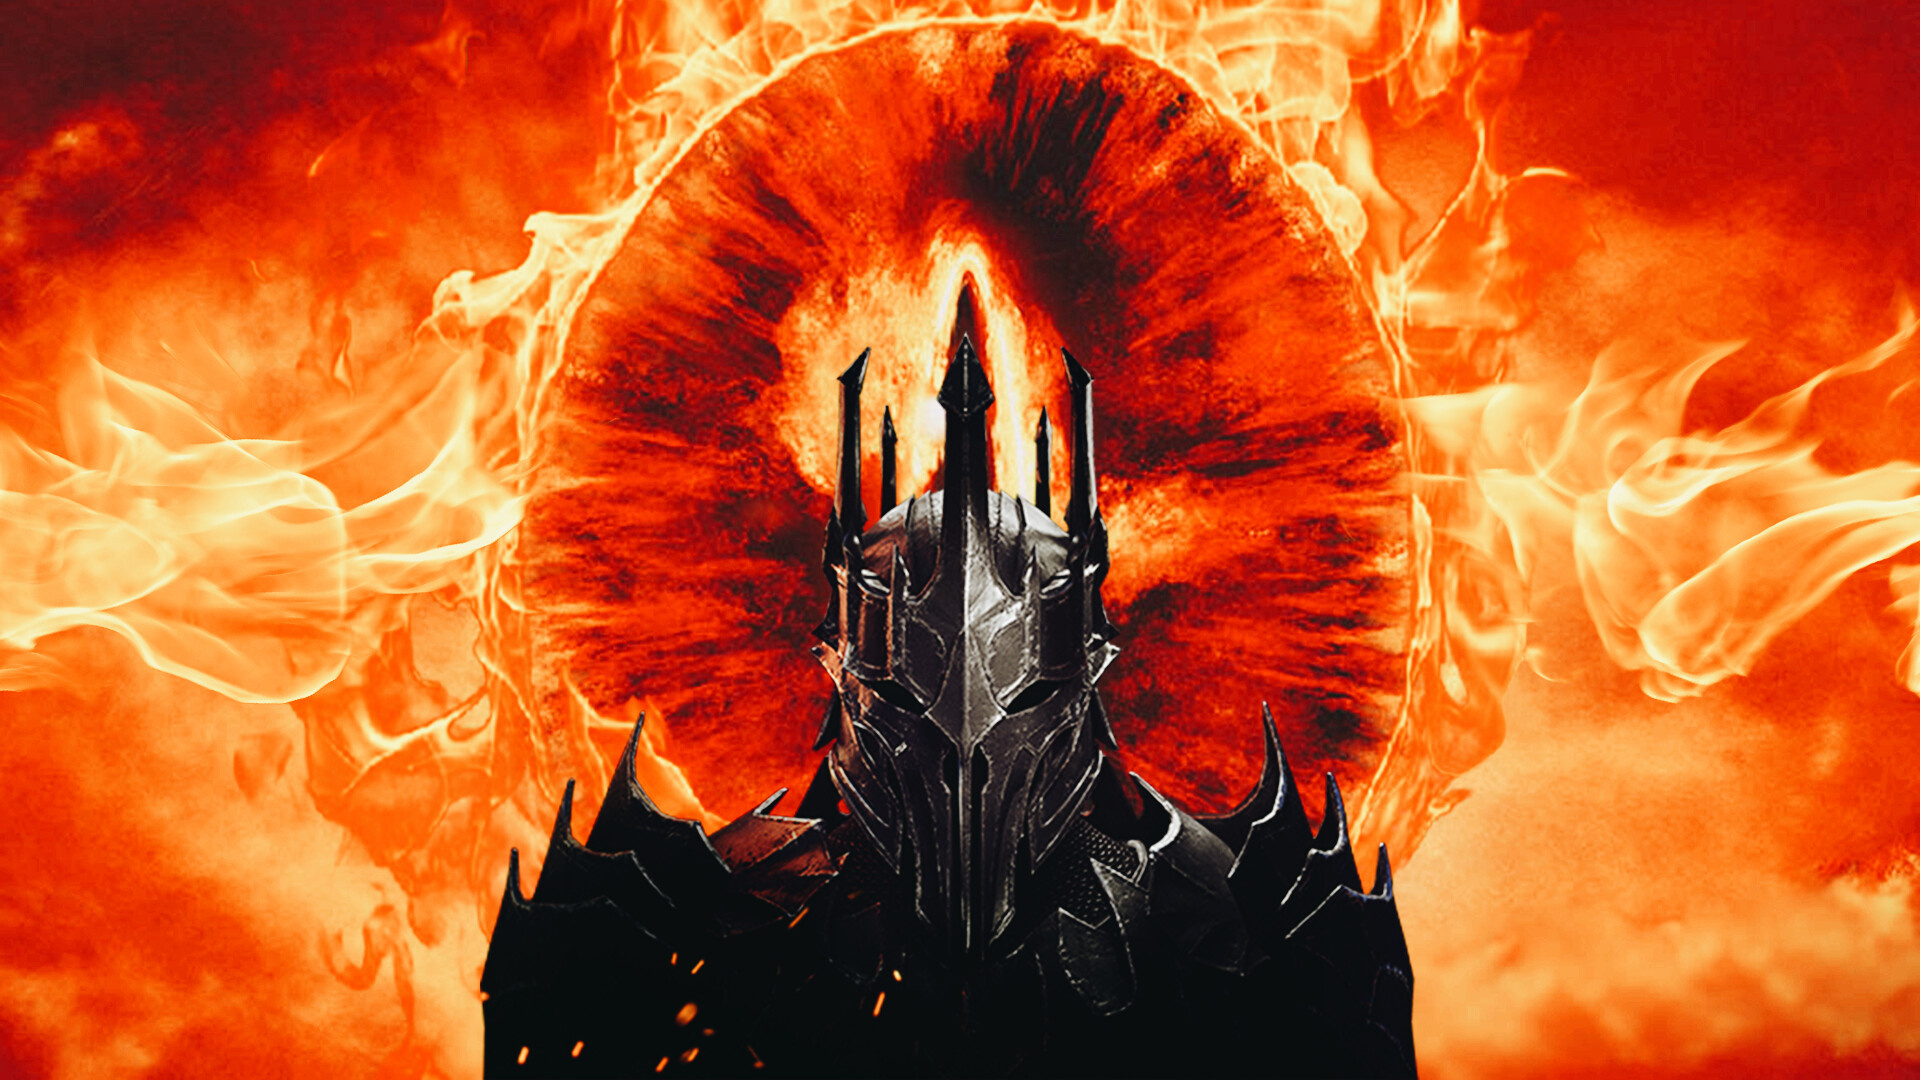 Denisninja x Denisninja, Overlord Sauron, Return wallpaper, 1920x1080 Full HD Desktop